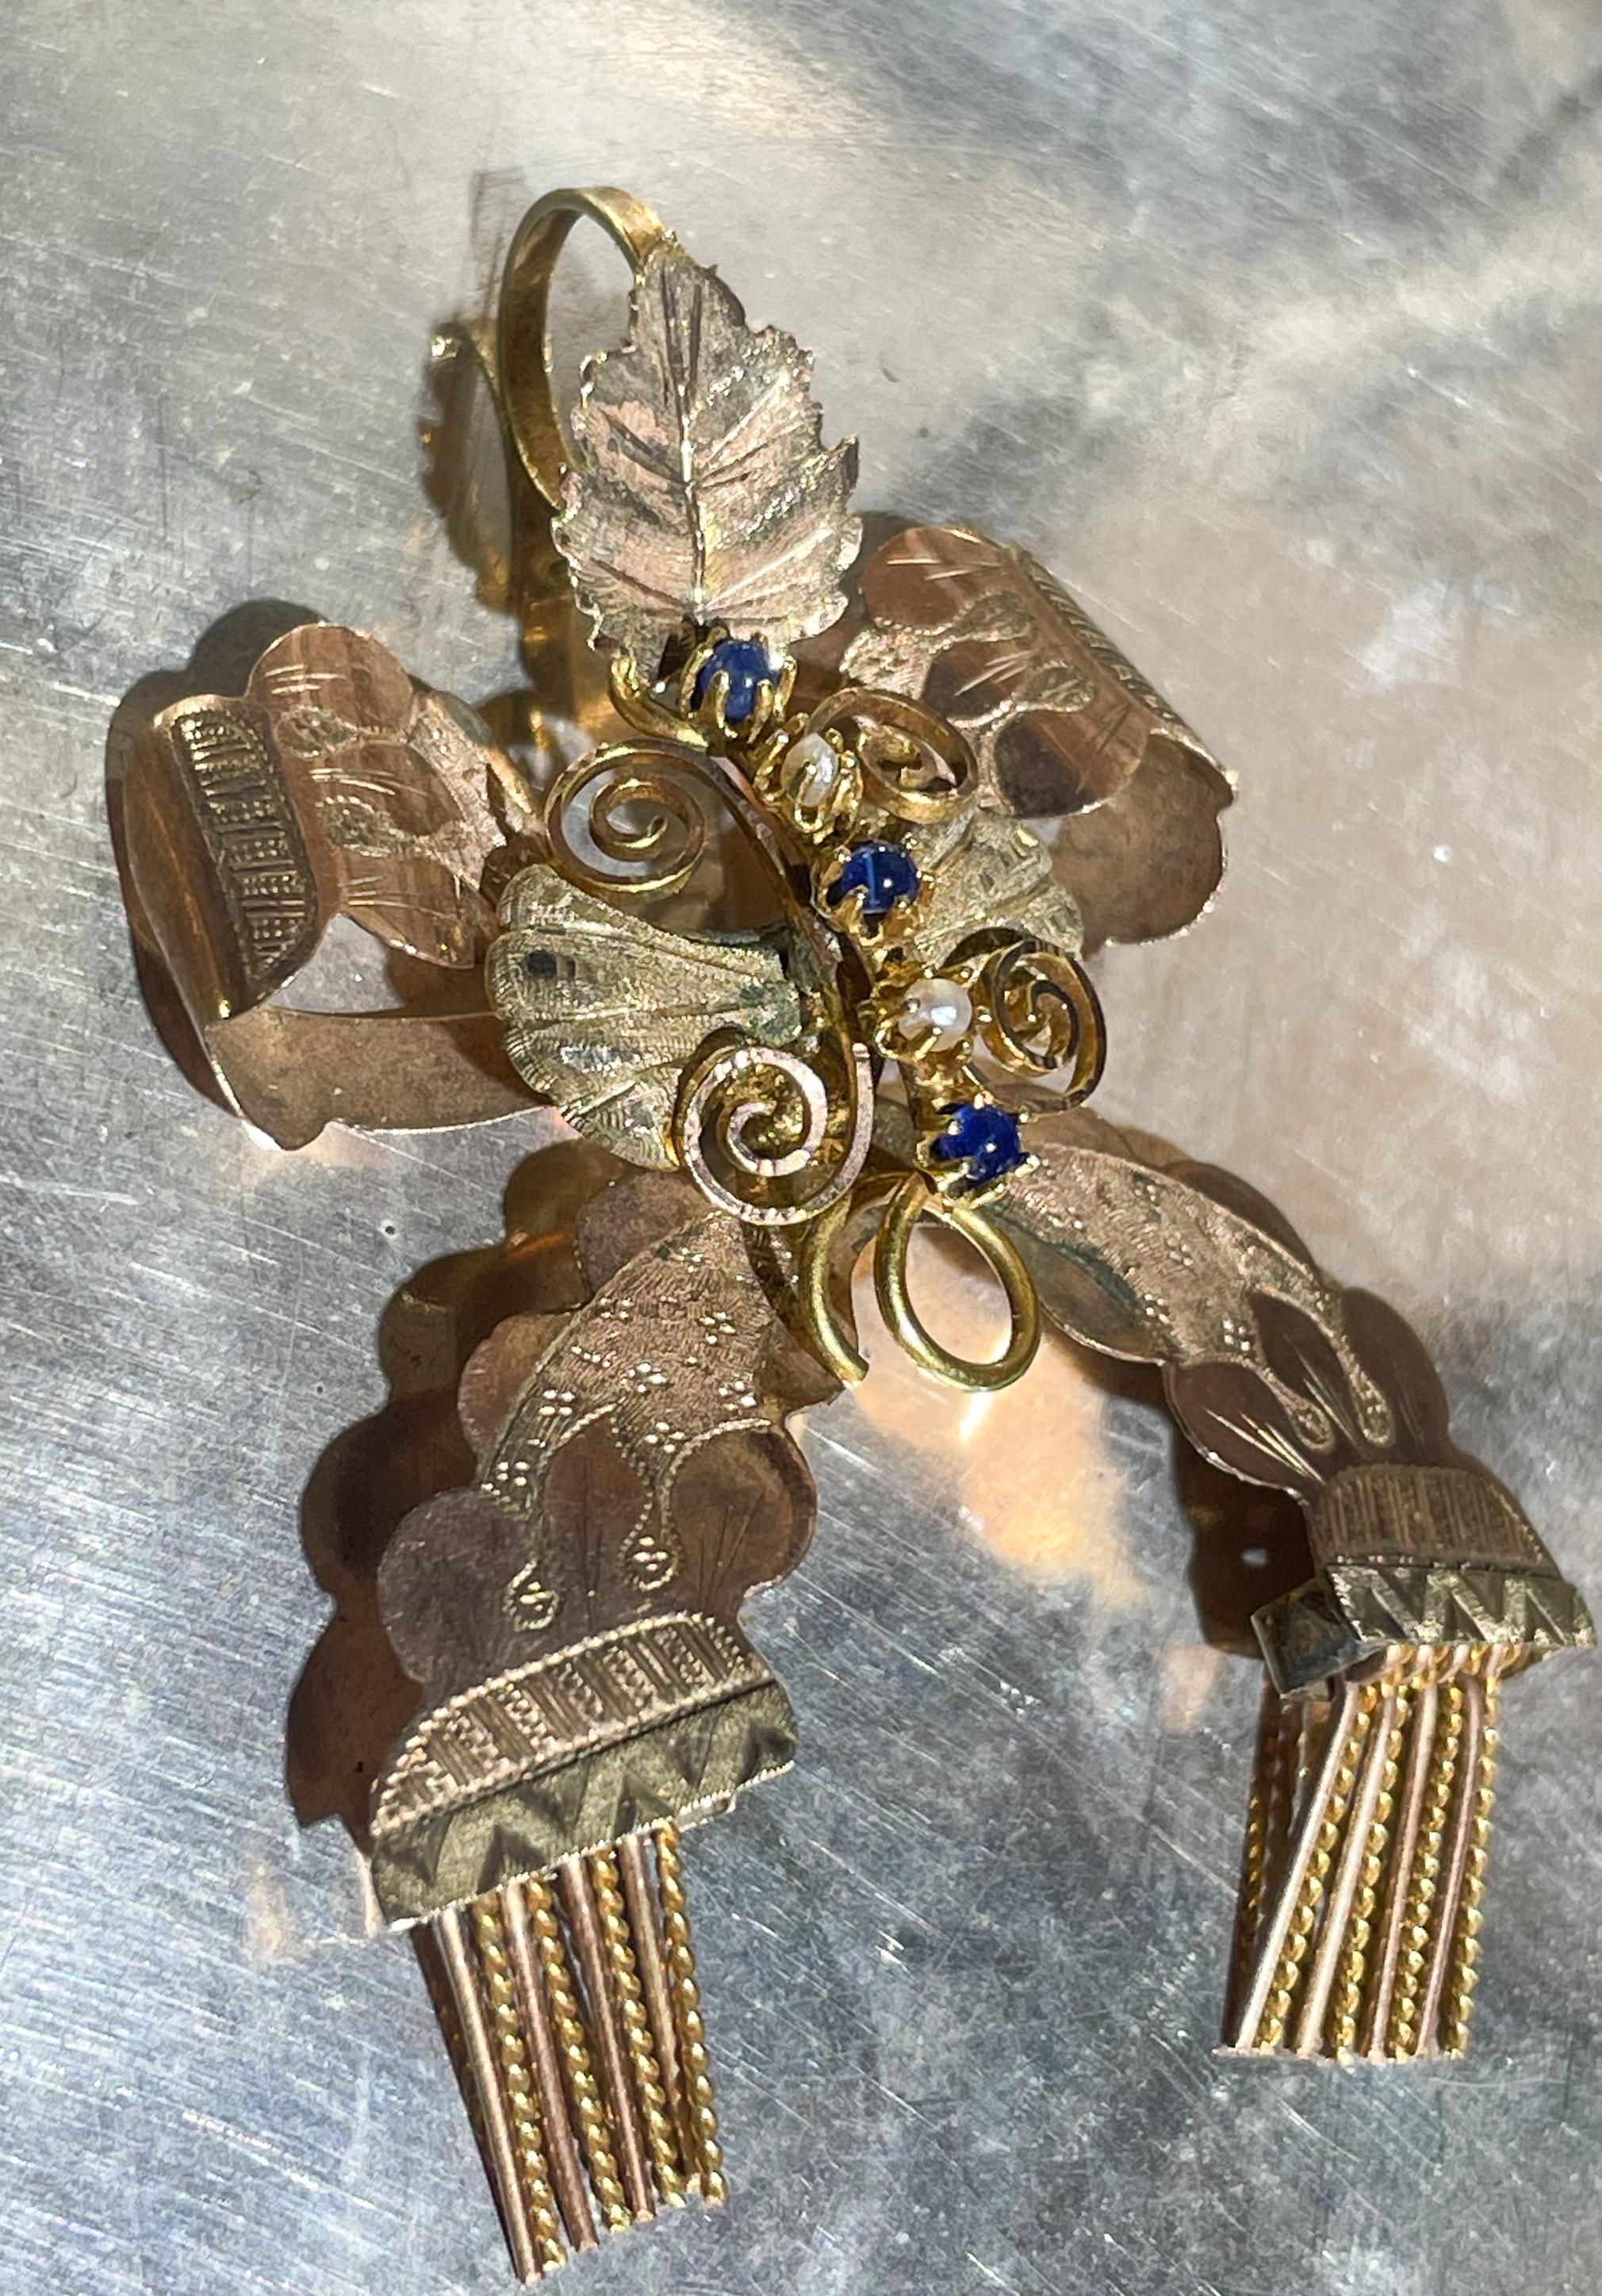 XIXe siècle.
Un nœud orné de bijoux avec des glands, en bas d'or.
Région napolitaine. - Art nouveau Art par Unknown